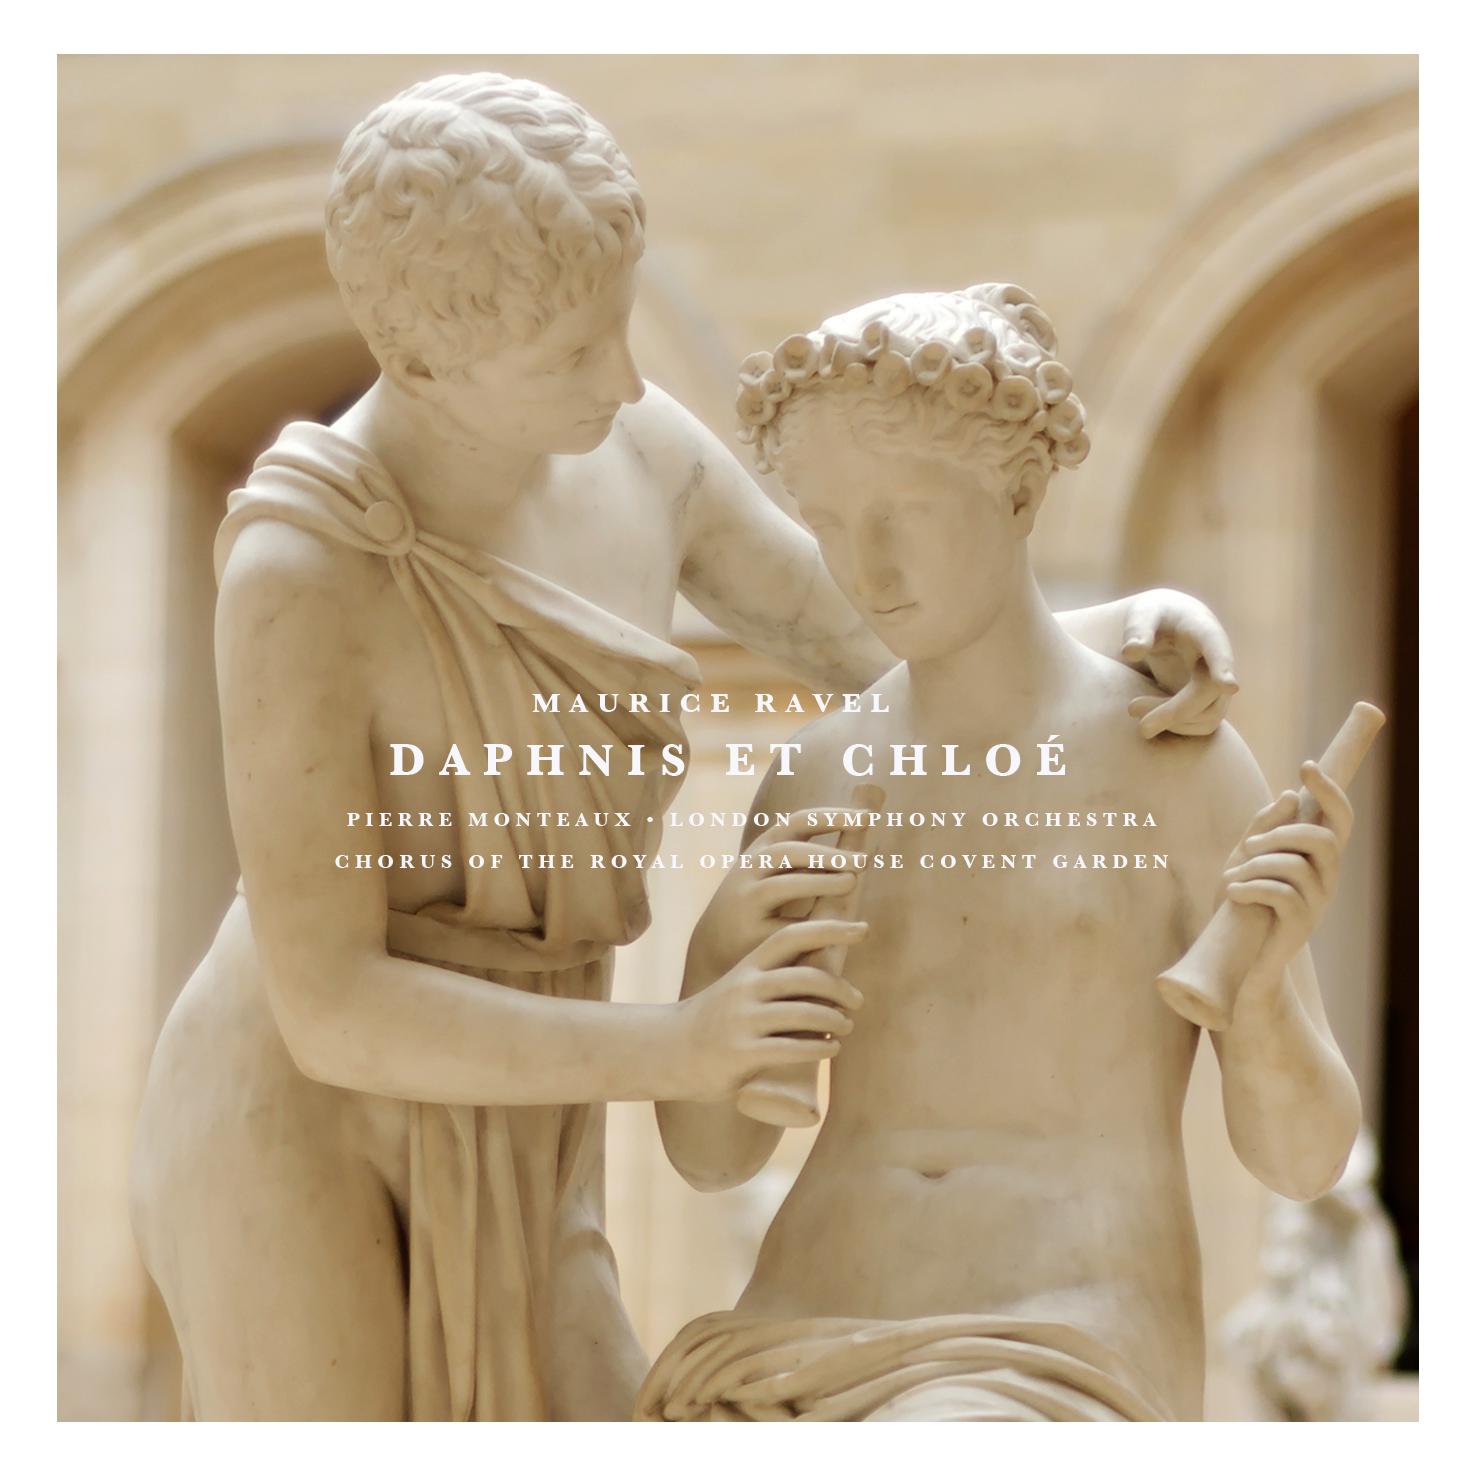 Daphnis Et Chloe: Part III " Pantomime, Les amours de Pan et Syrinx"